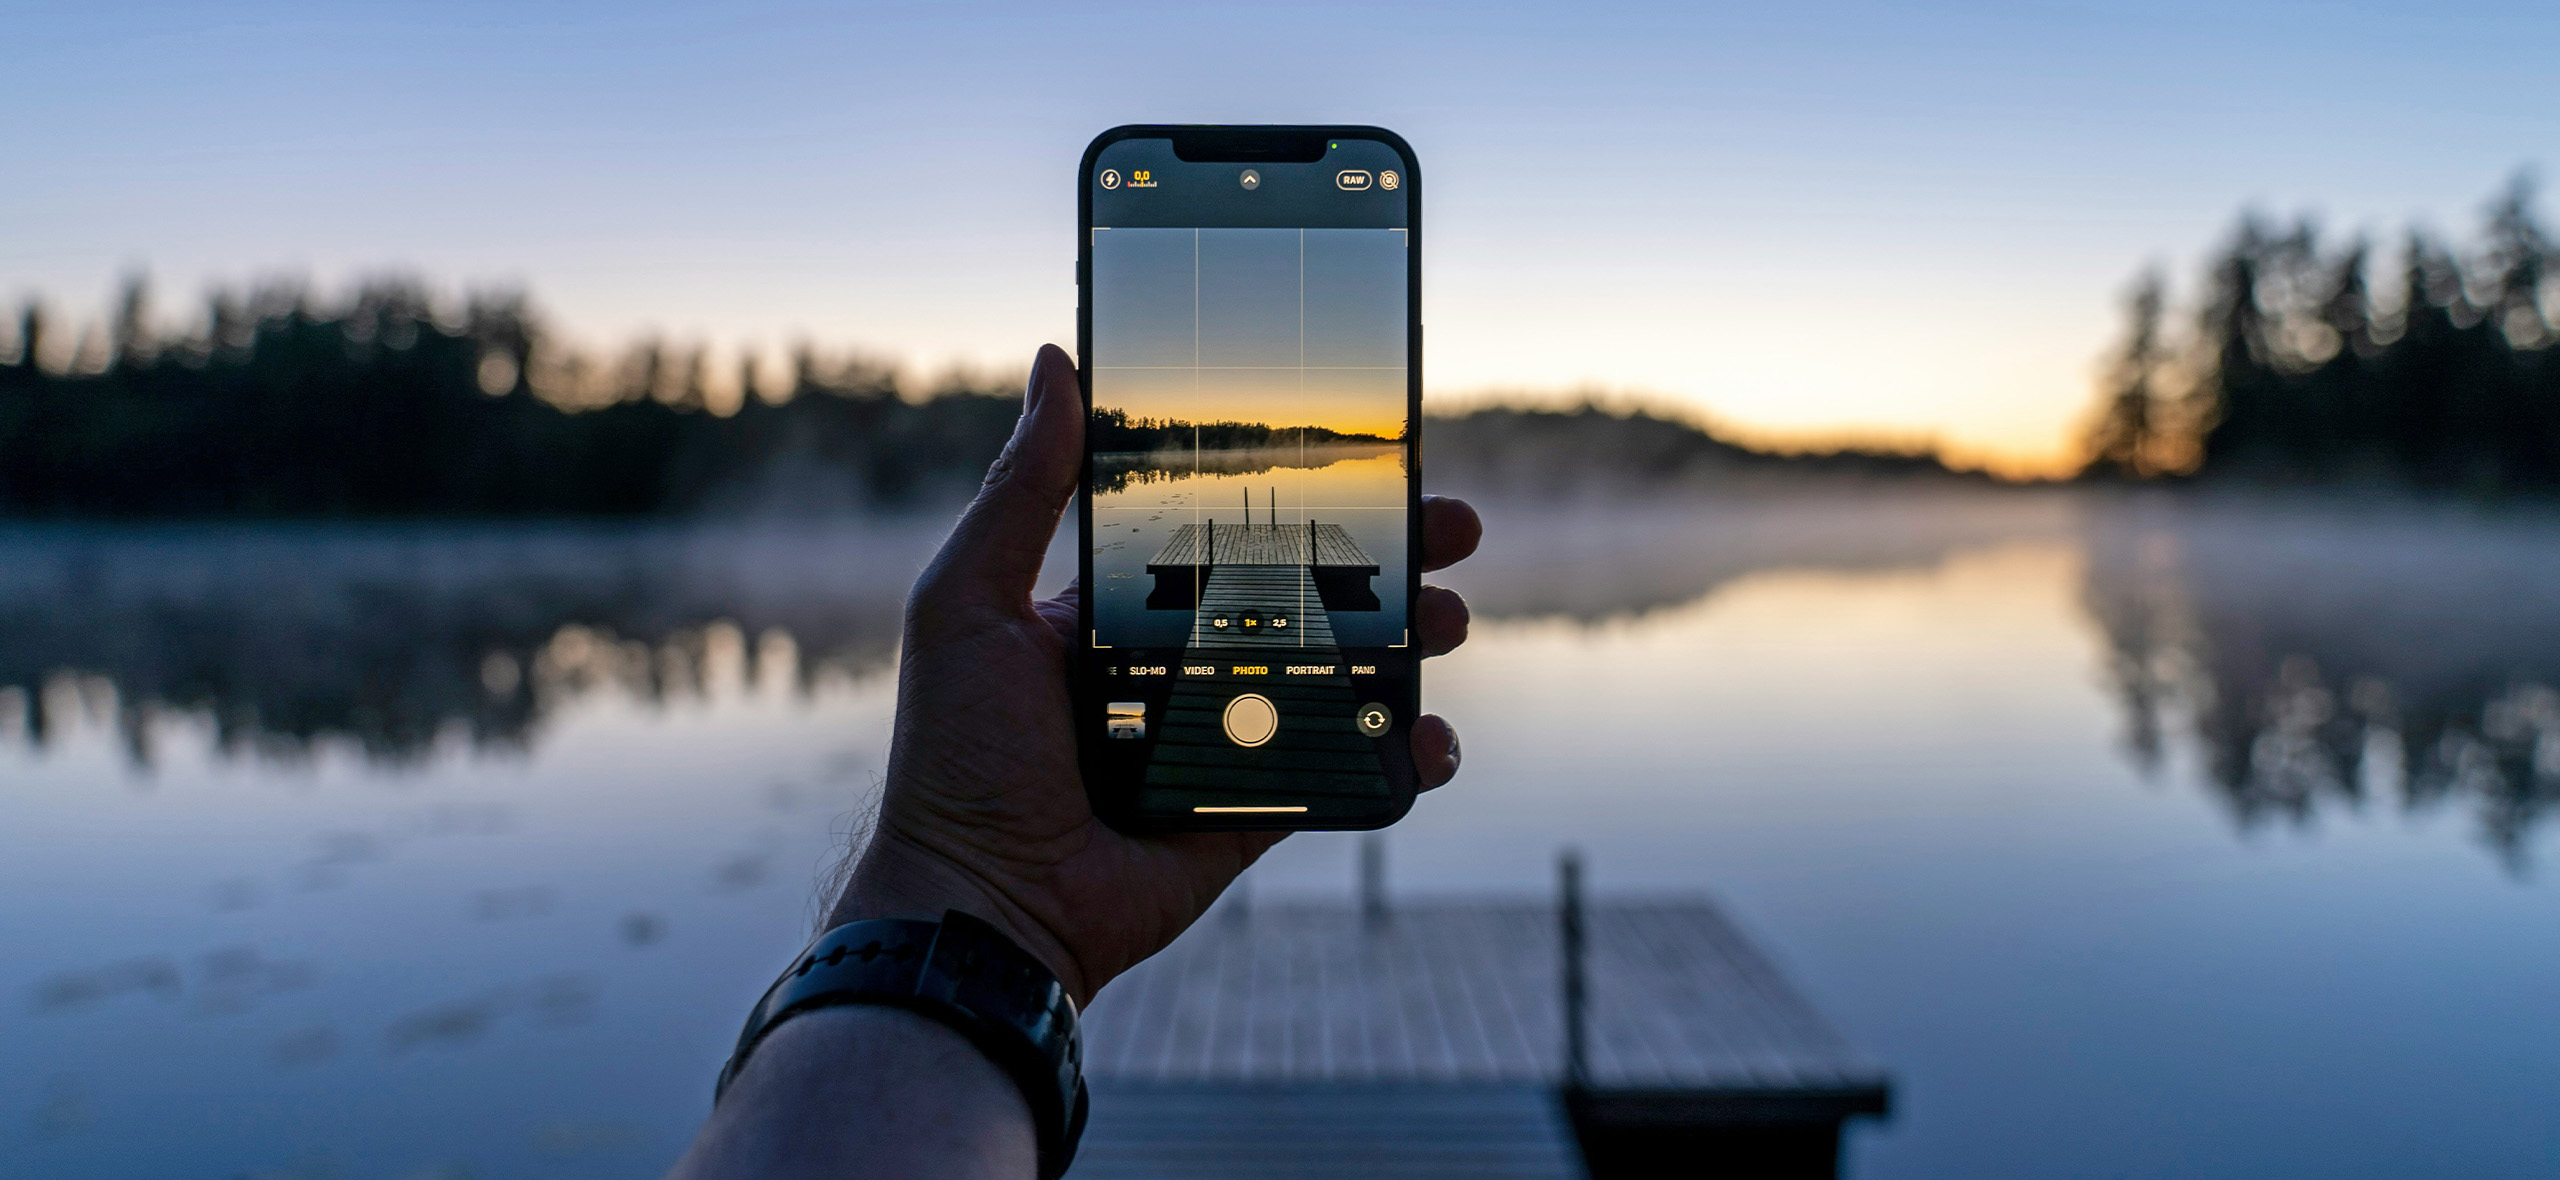 10 настроек, кото­рые помогут лучше фото­графировать на Айфон